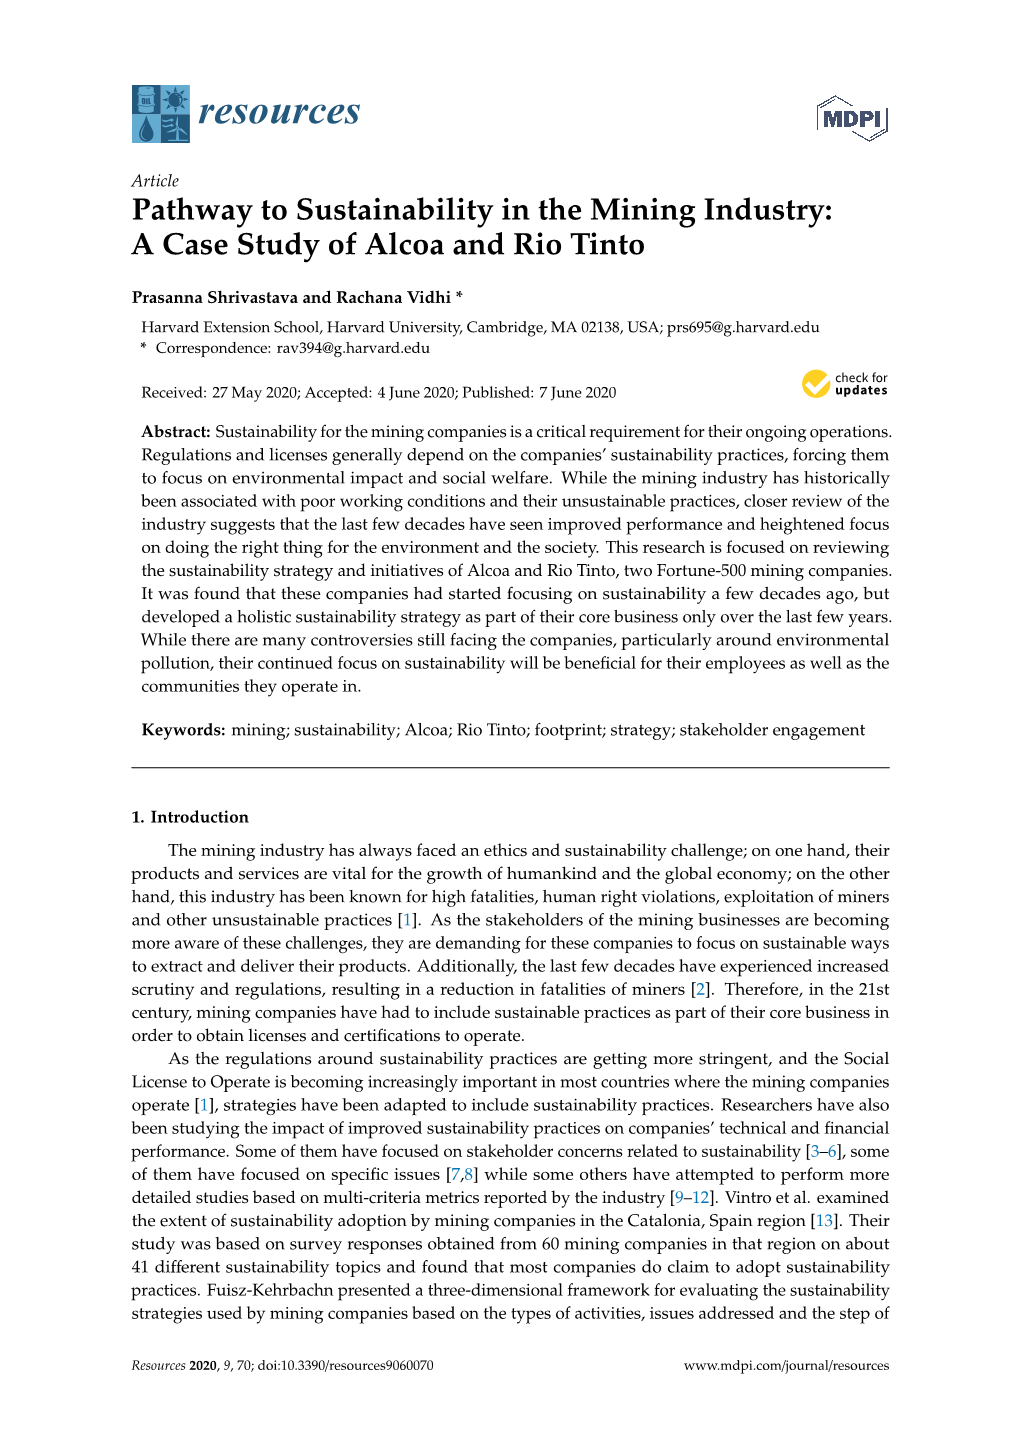 A Case Study of Alcoa and Rio Tinto